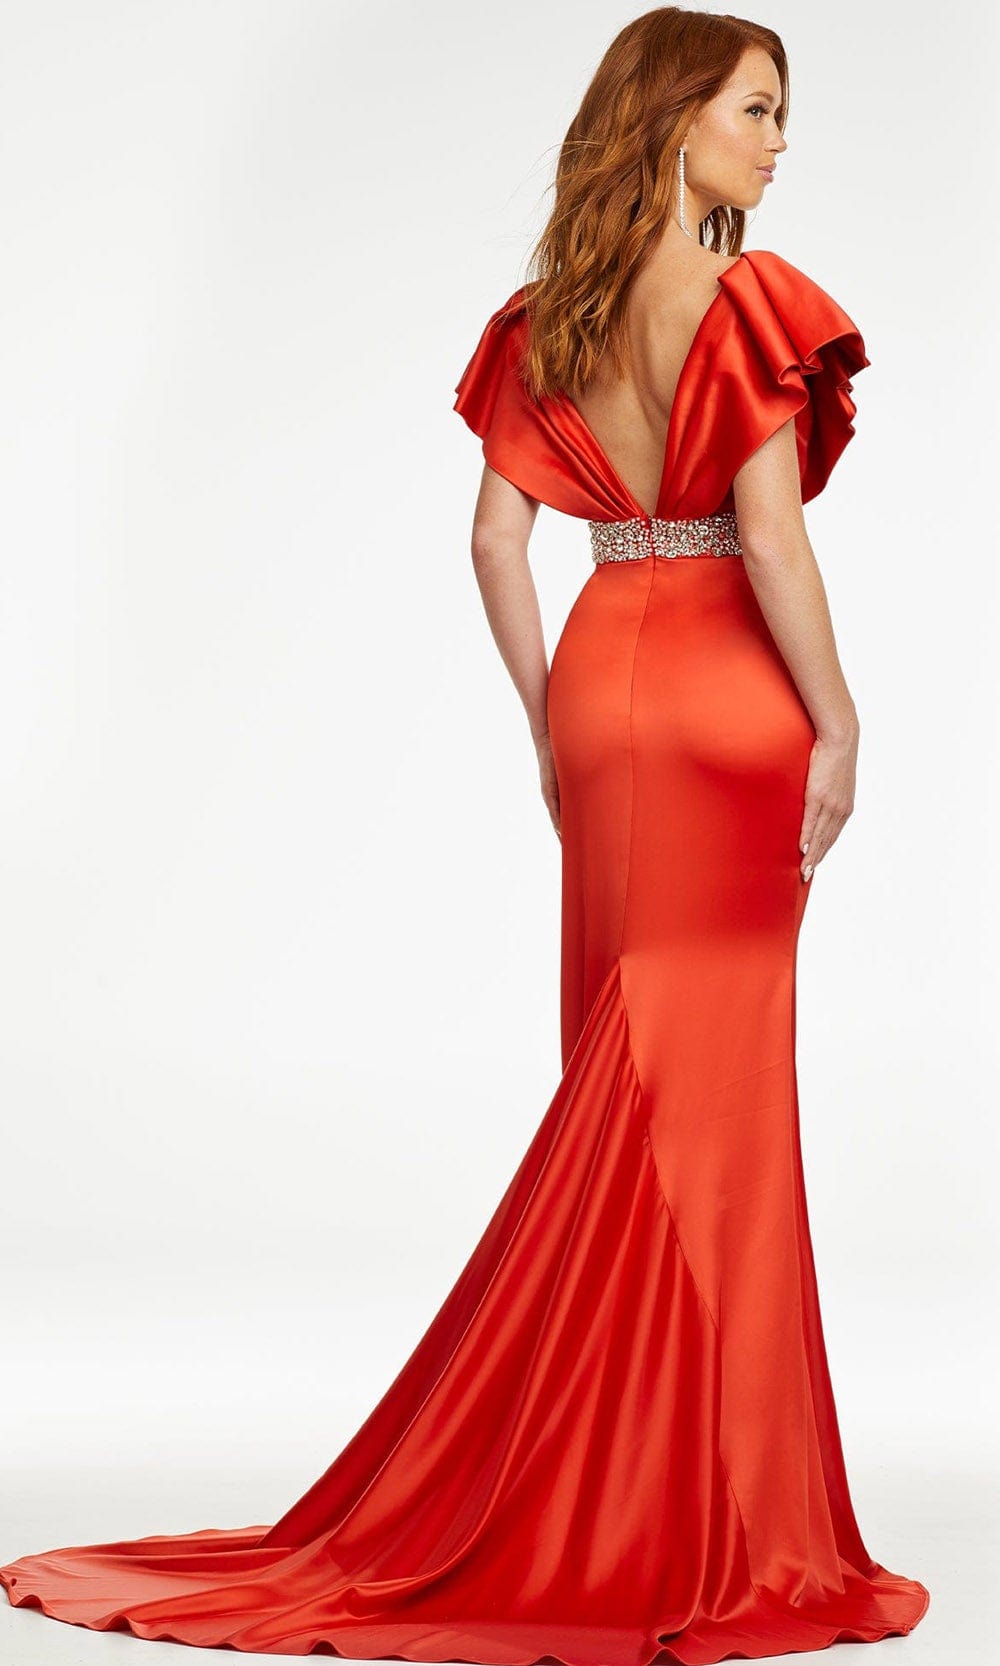 Ashley Lauren - 11130 Ruffled V-Neck Trumpet Gown Prom Dresses